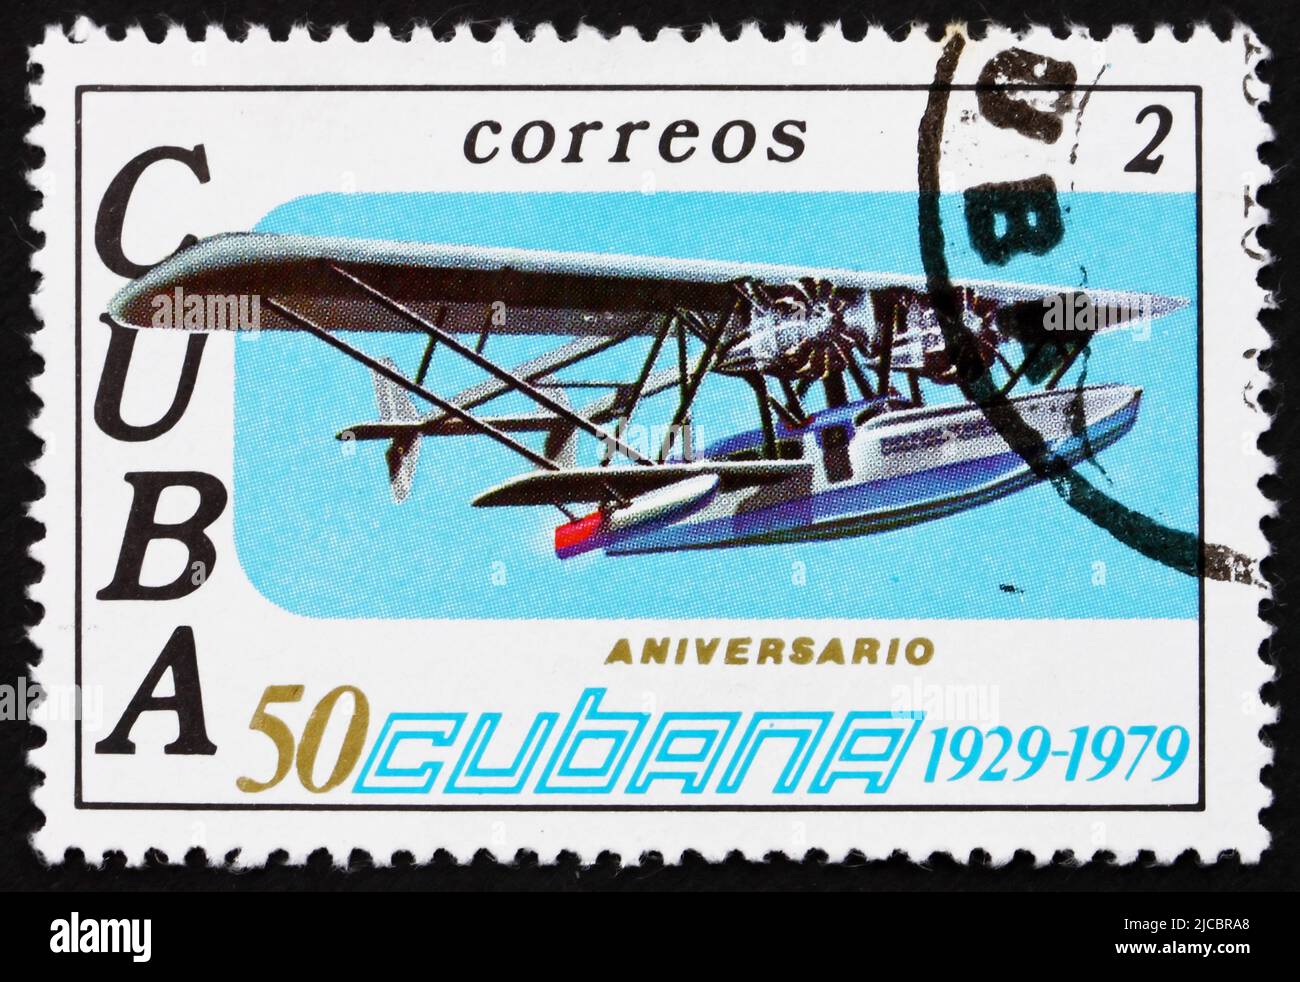 KUBA - UM 1979: Eine auf Kuba gedruckte Briefmarke zeigt Sikorsky S-38, 50. Jahrestag von Cubana Airlines, um 1979 Stockfoto